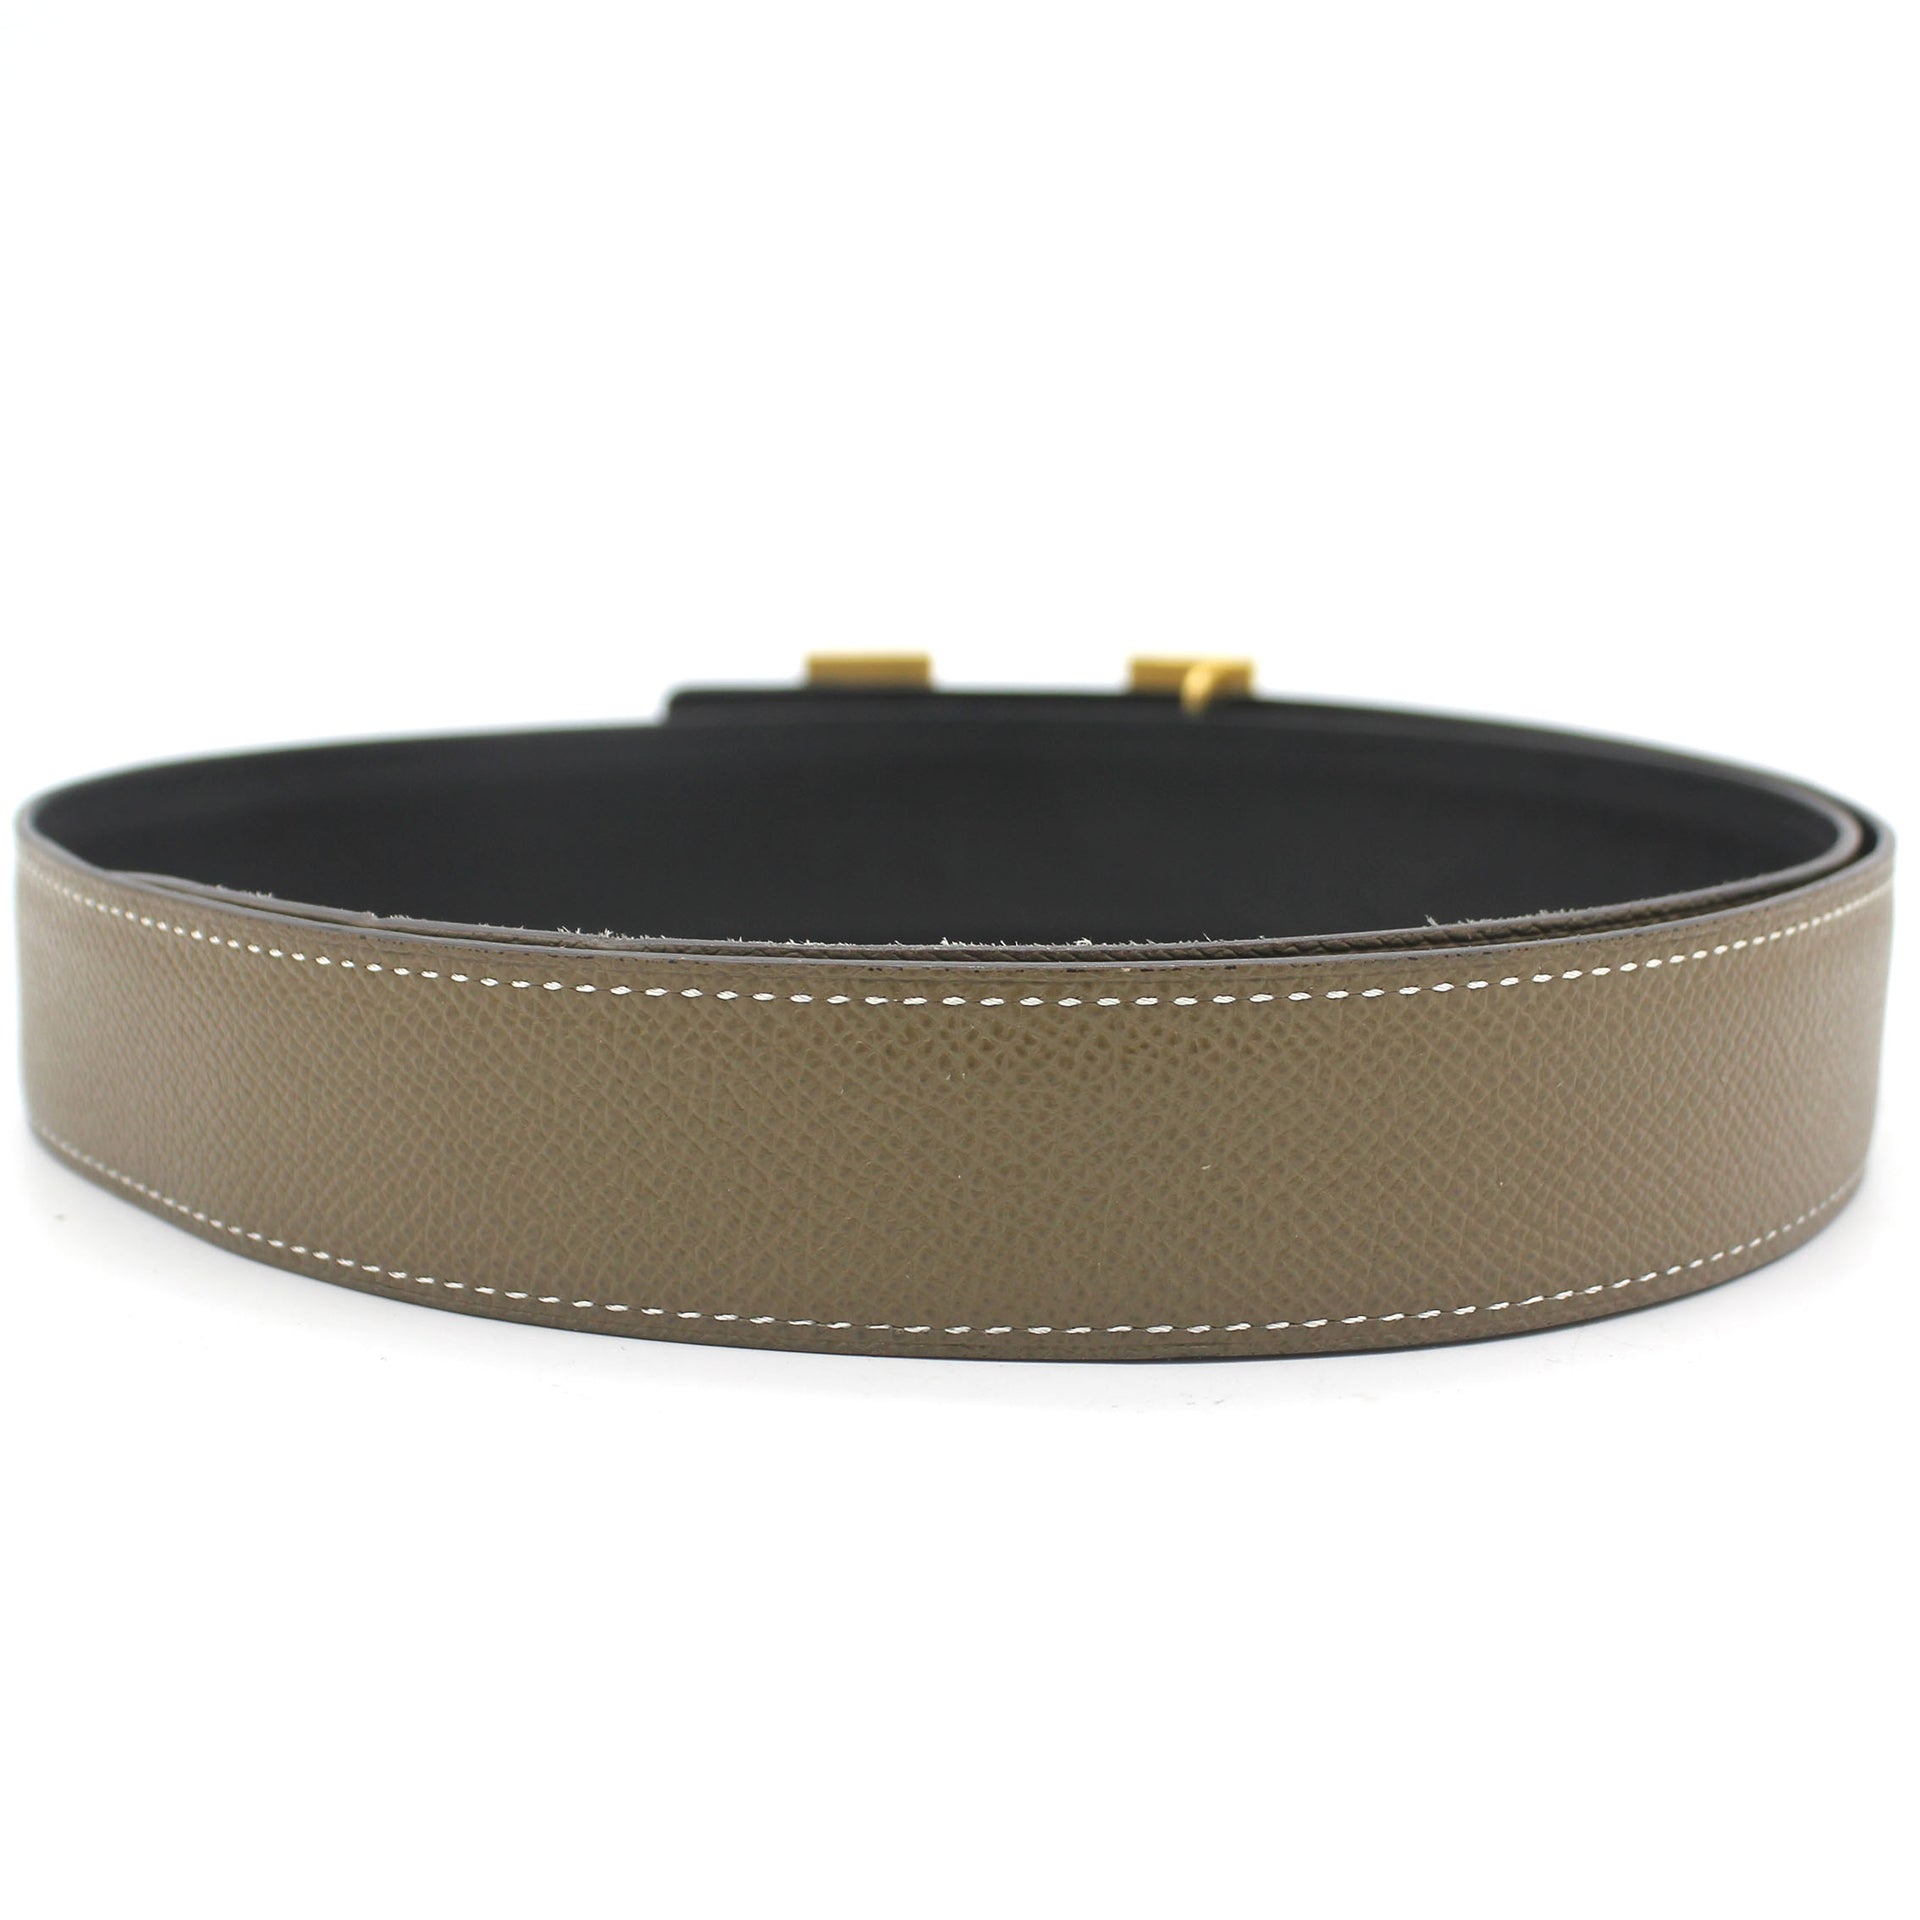 H Martelee belt buckle & Reversible leather strap